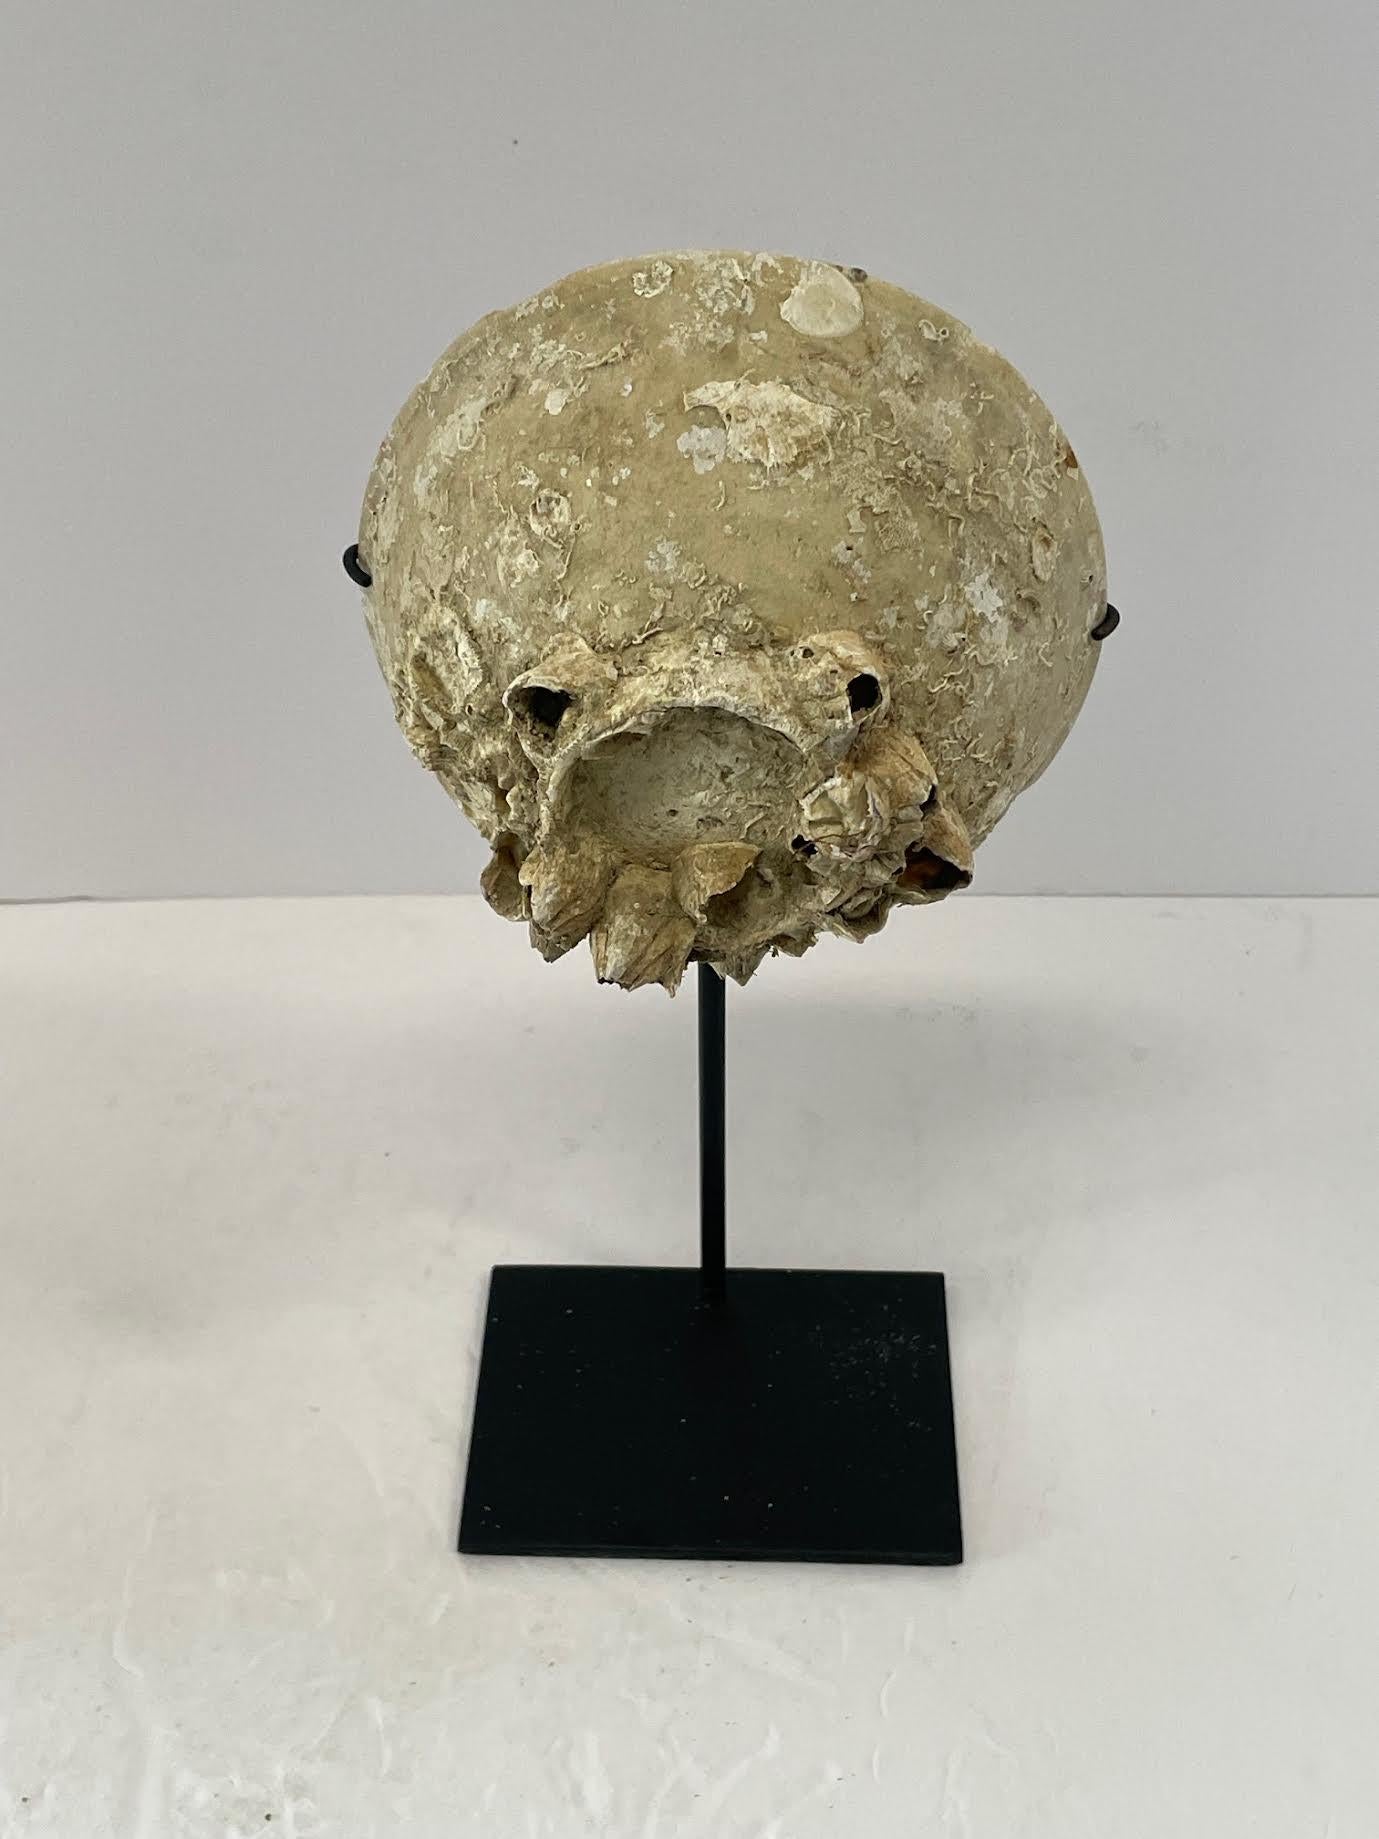 Keramikbecher aus dem 16. Jahrhundert aus einem Schiffswrack auf einem Ständer entdeckt.
Aus der Ming-Dynastie.
Schöne natürliche verwitterte Patina.
Ständermaß 5